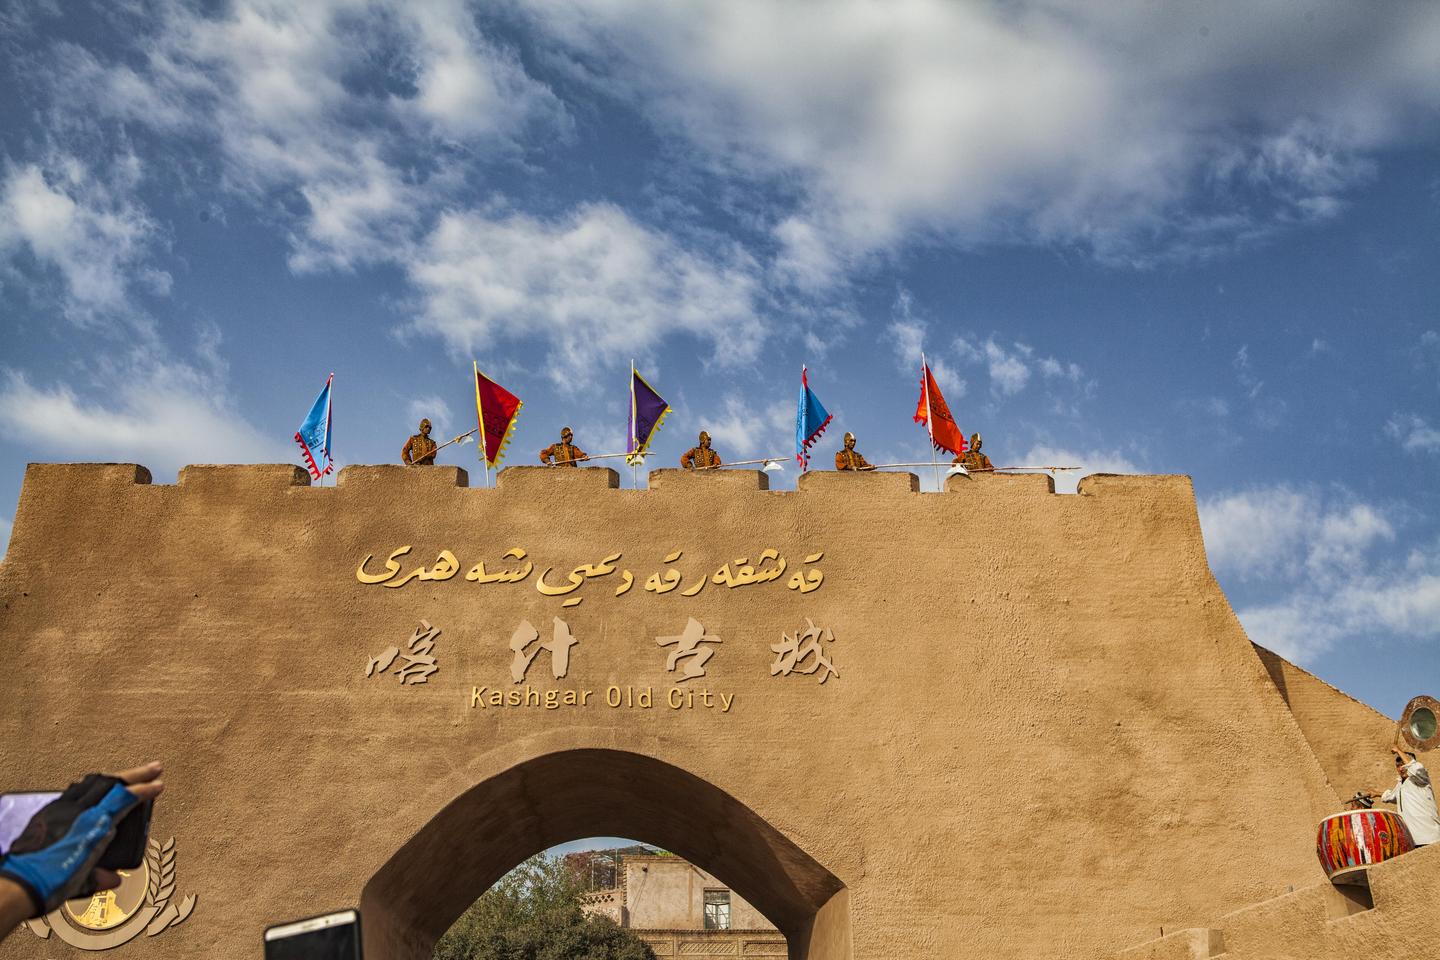 喀什旅游景点——游遍中国